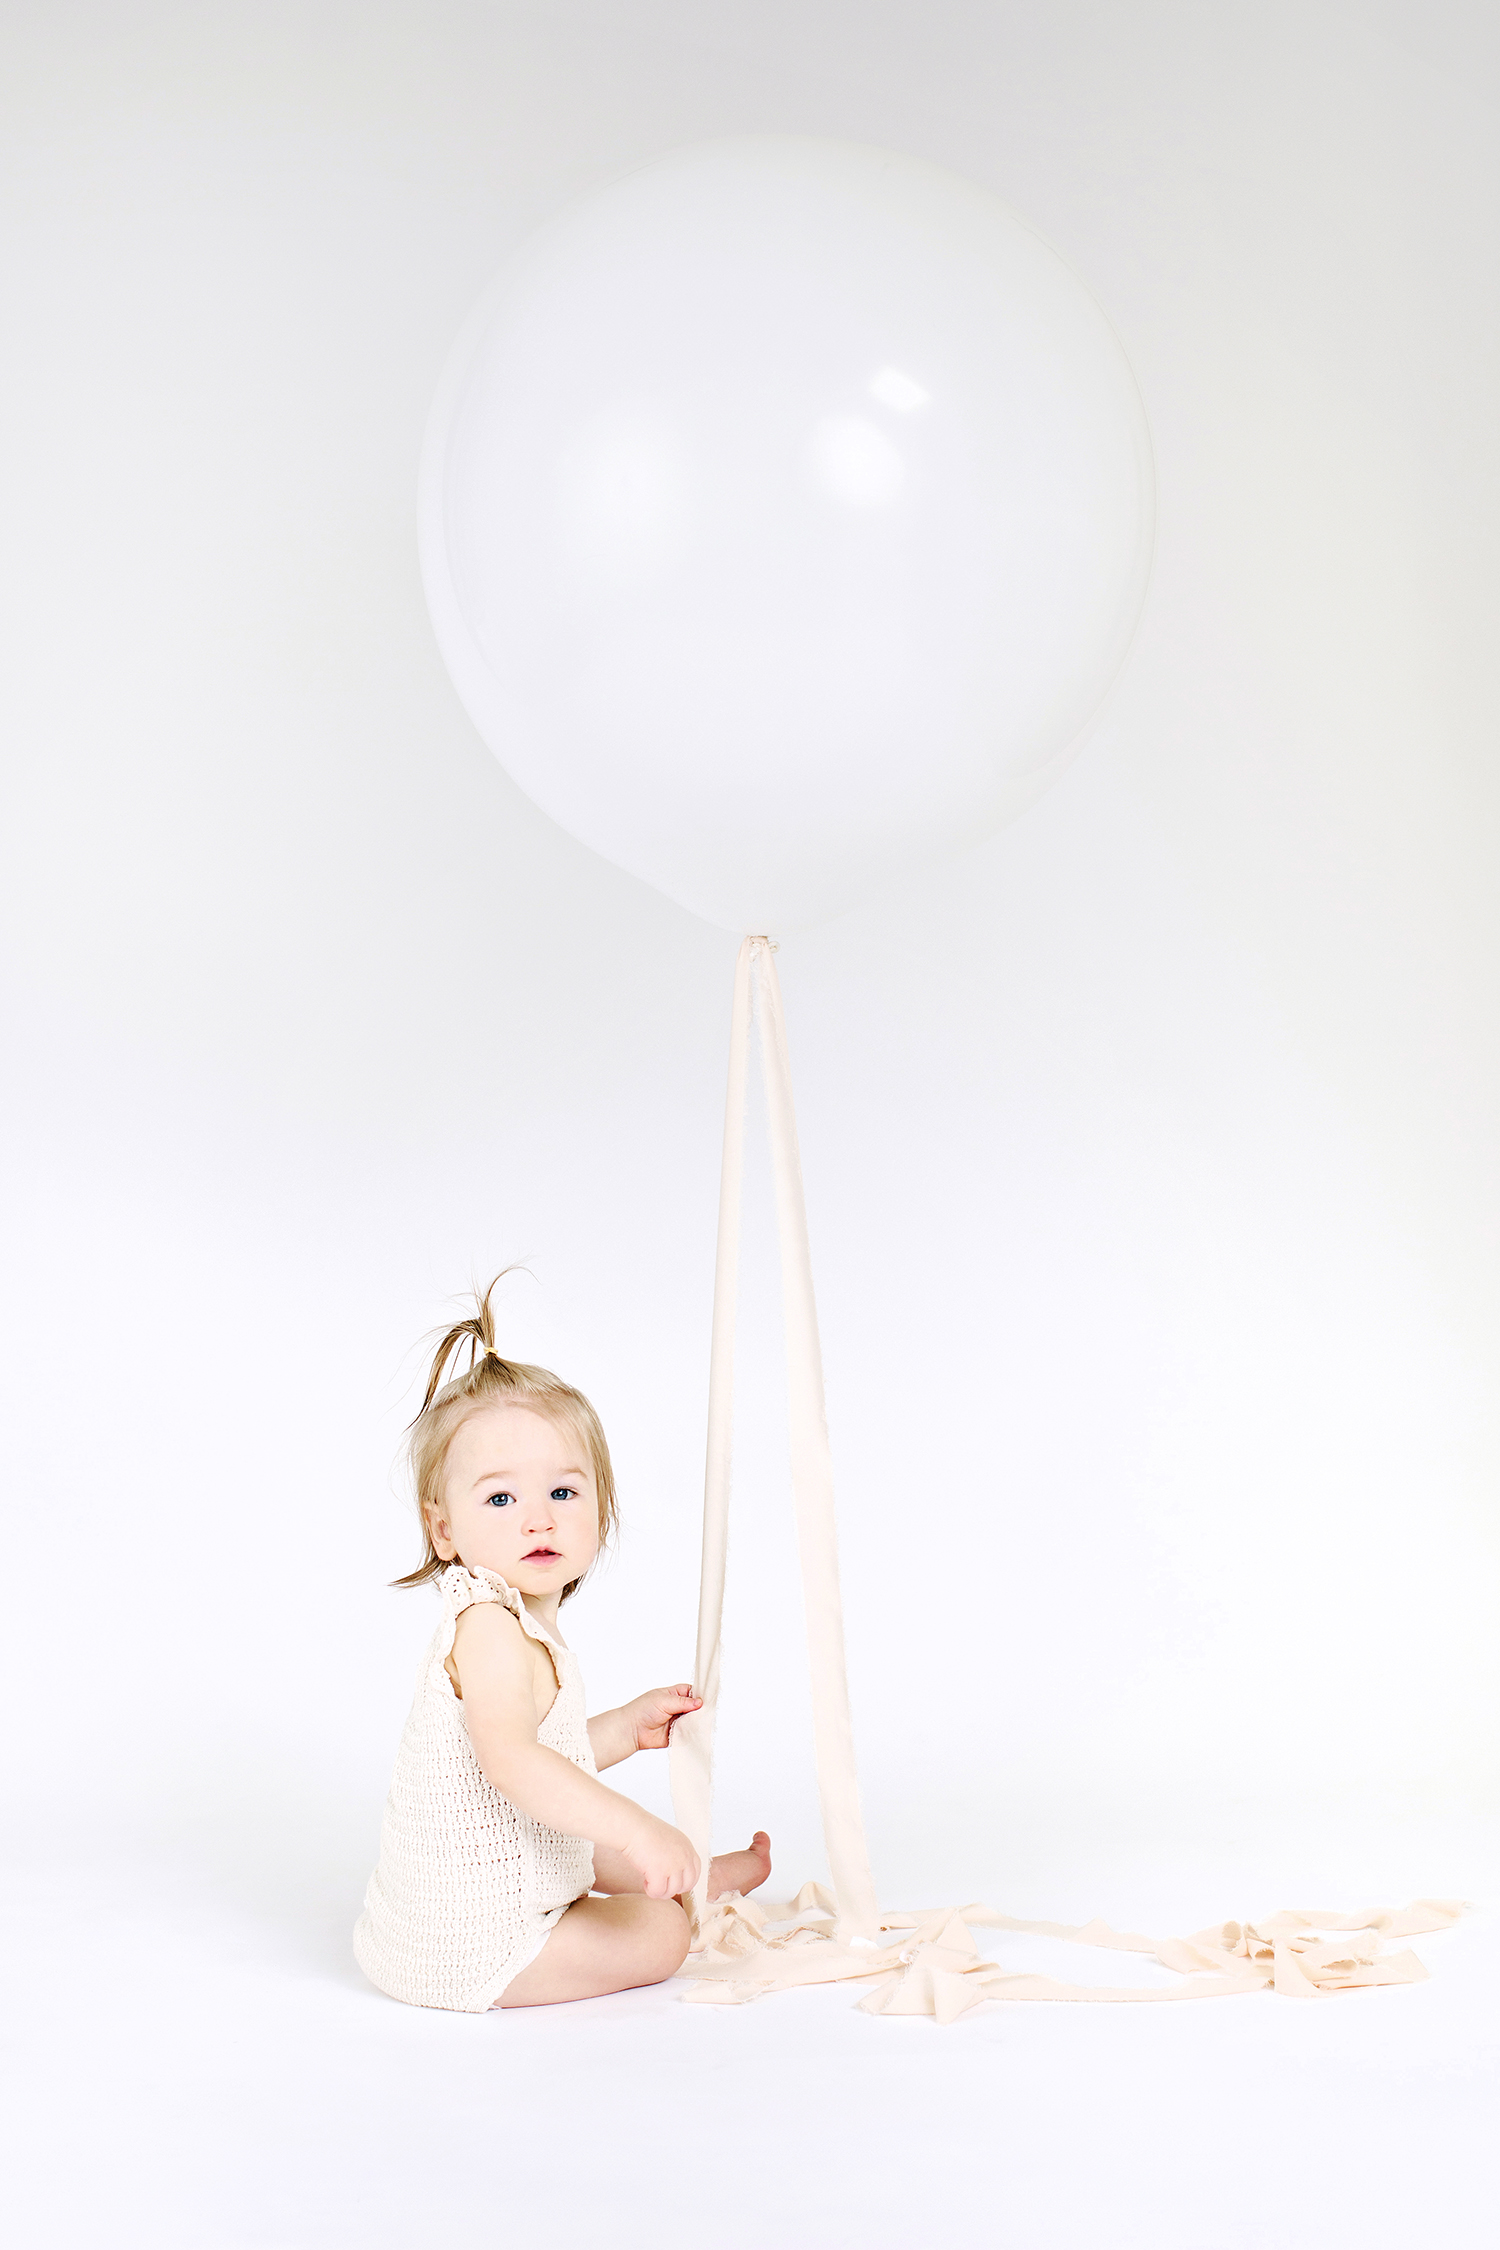 a baby girl holding a single white balloon